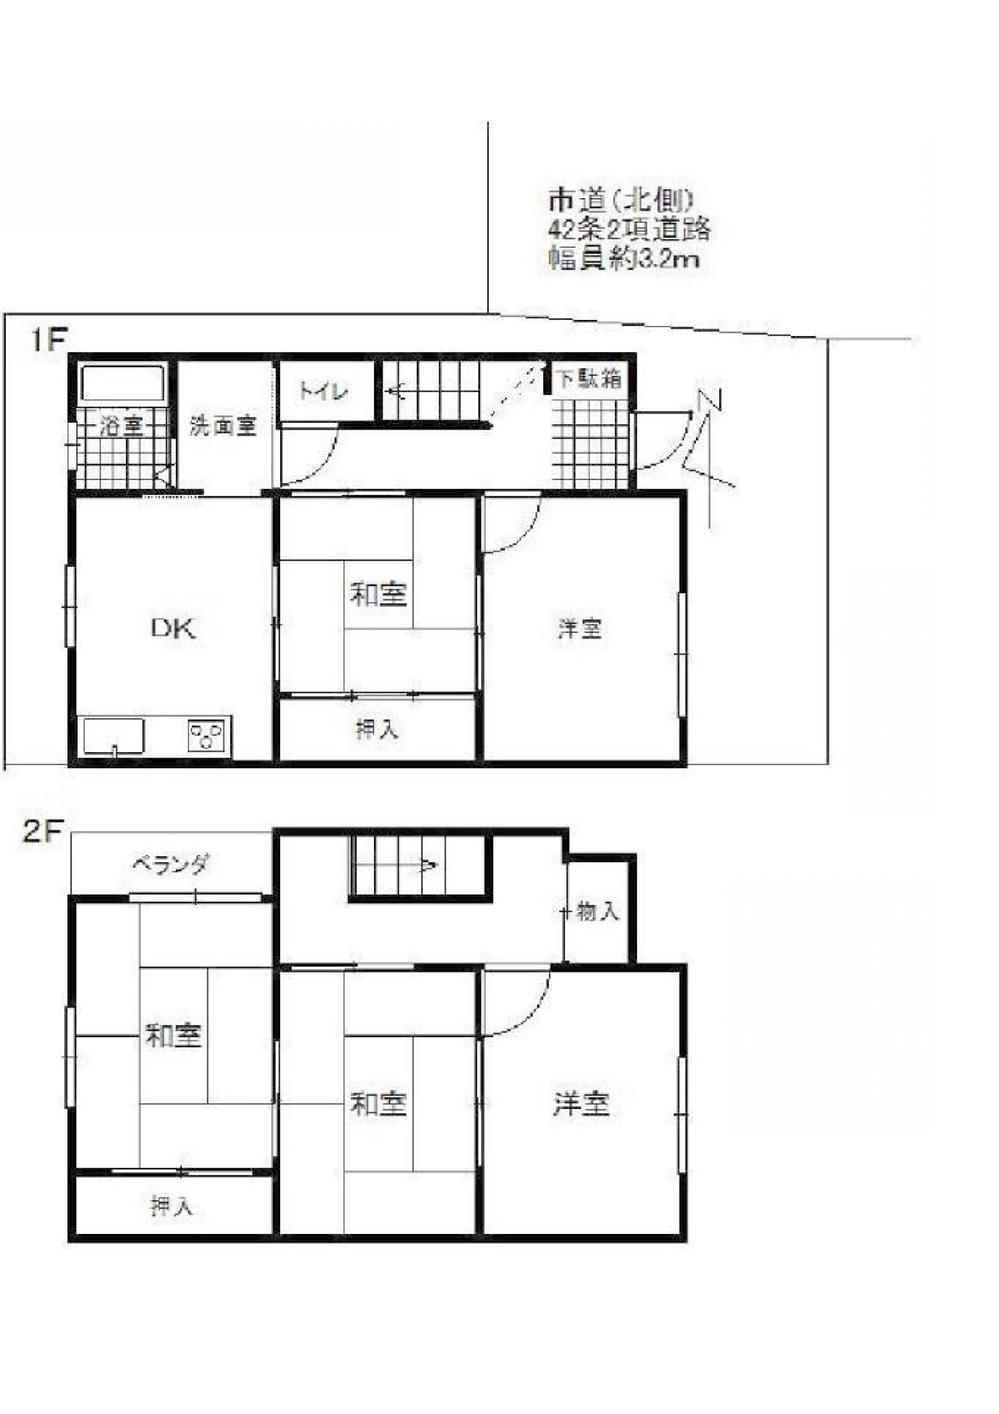 Floor plan. 7.9 million yen, 5DK, Land area 72.96 sq m , Building area 80.08 sq m